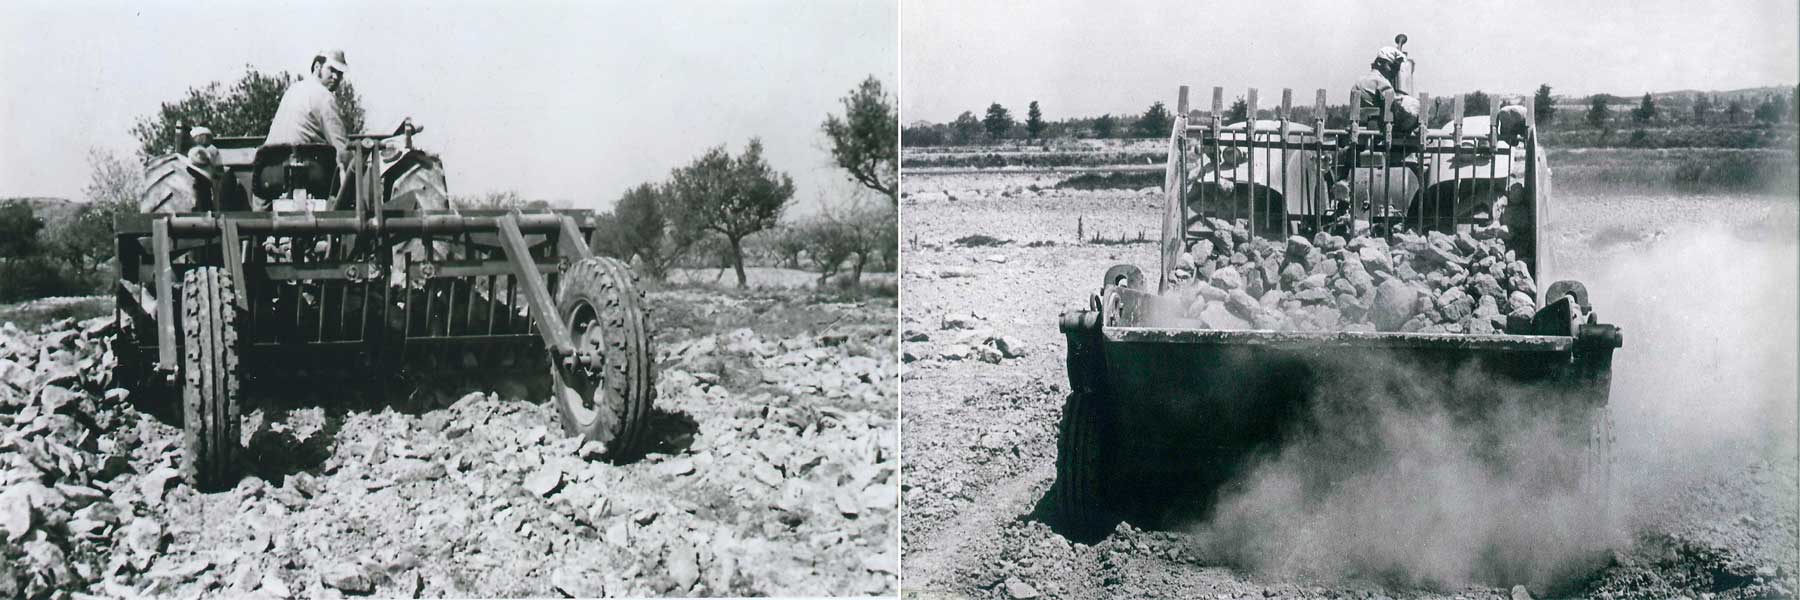 Rastrillo hilerador de piedras Jympa de 1971 (izq.) y despedregadora Jympa de 1973 (dcha.).